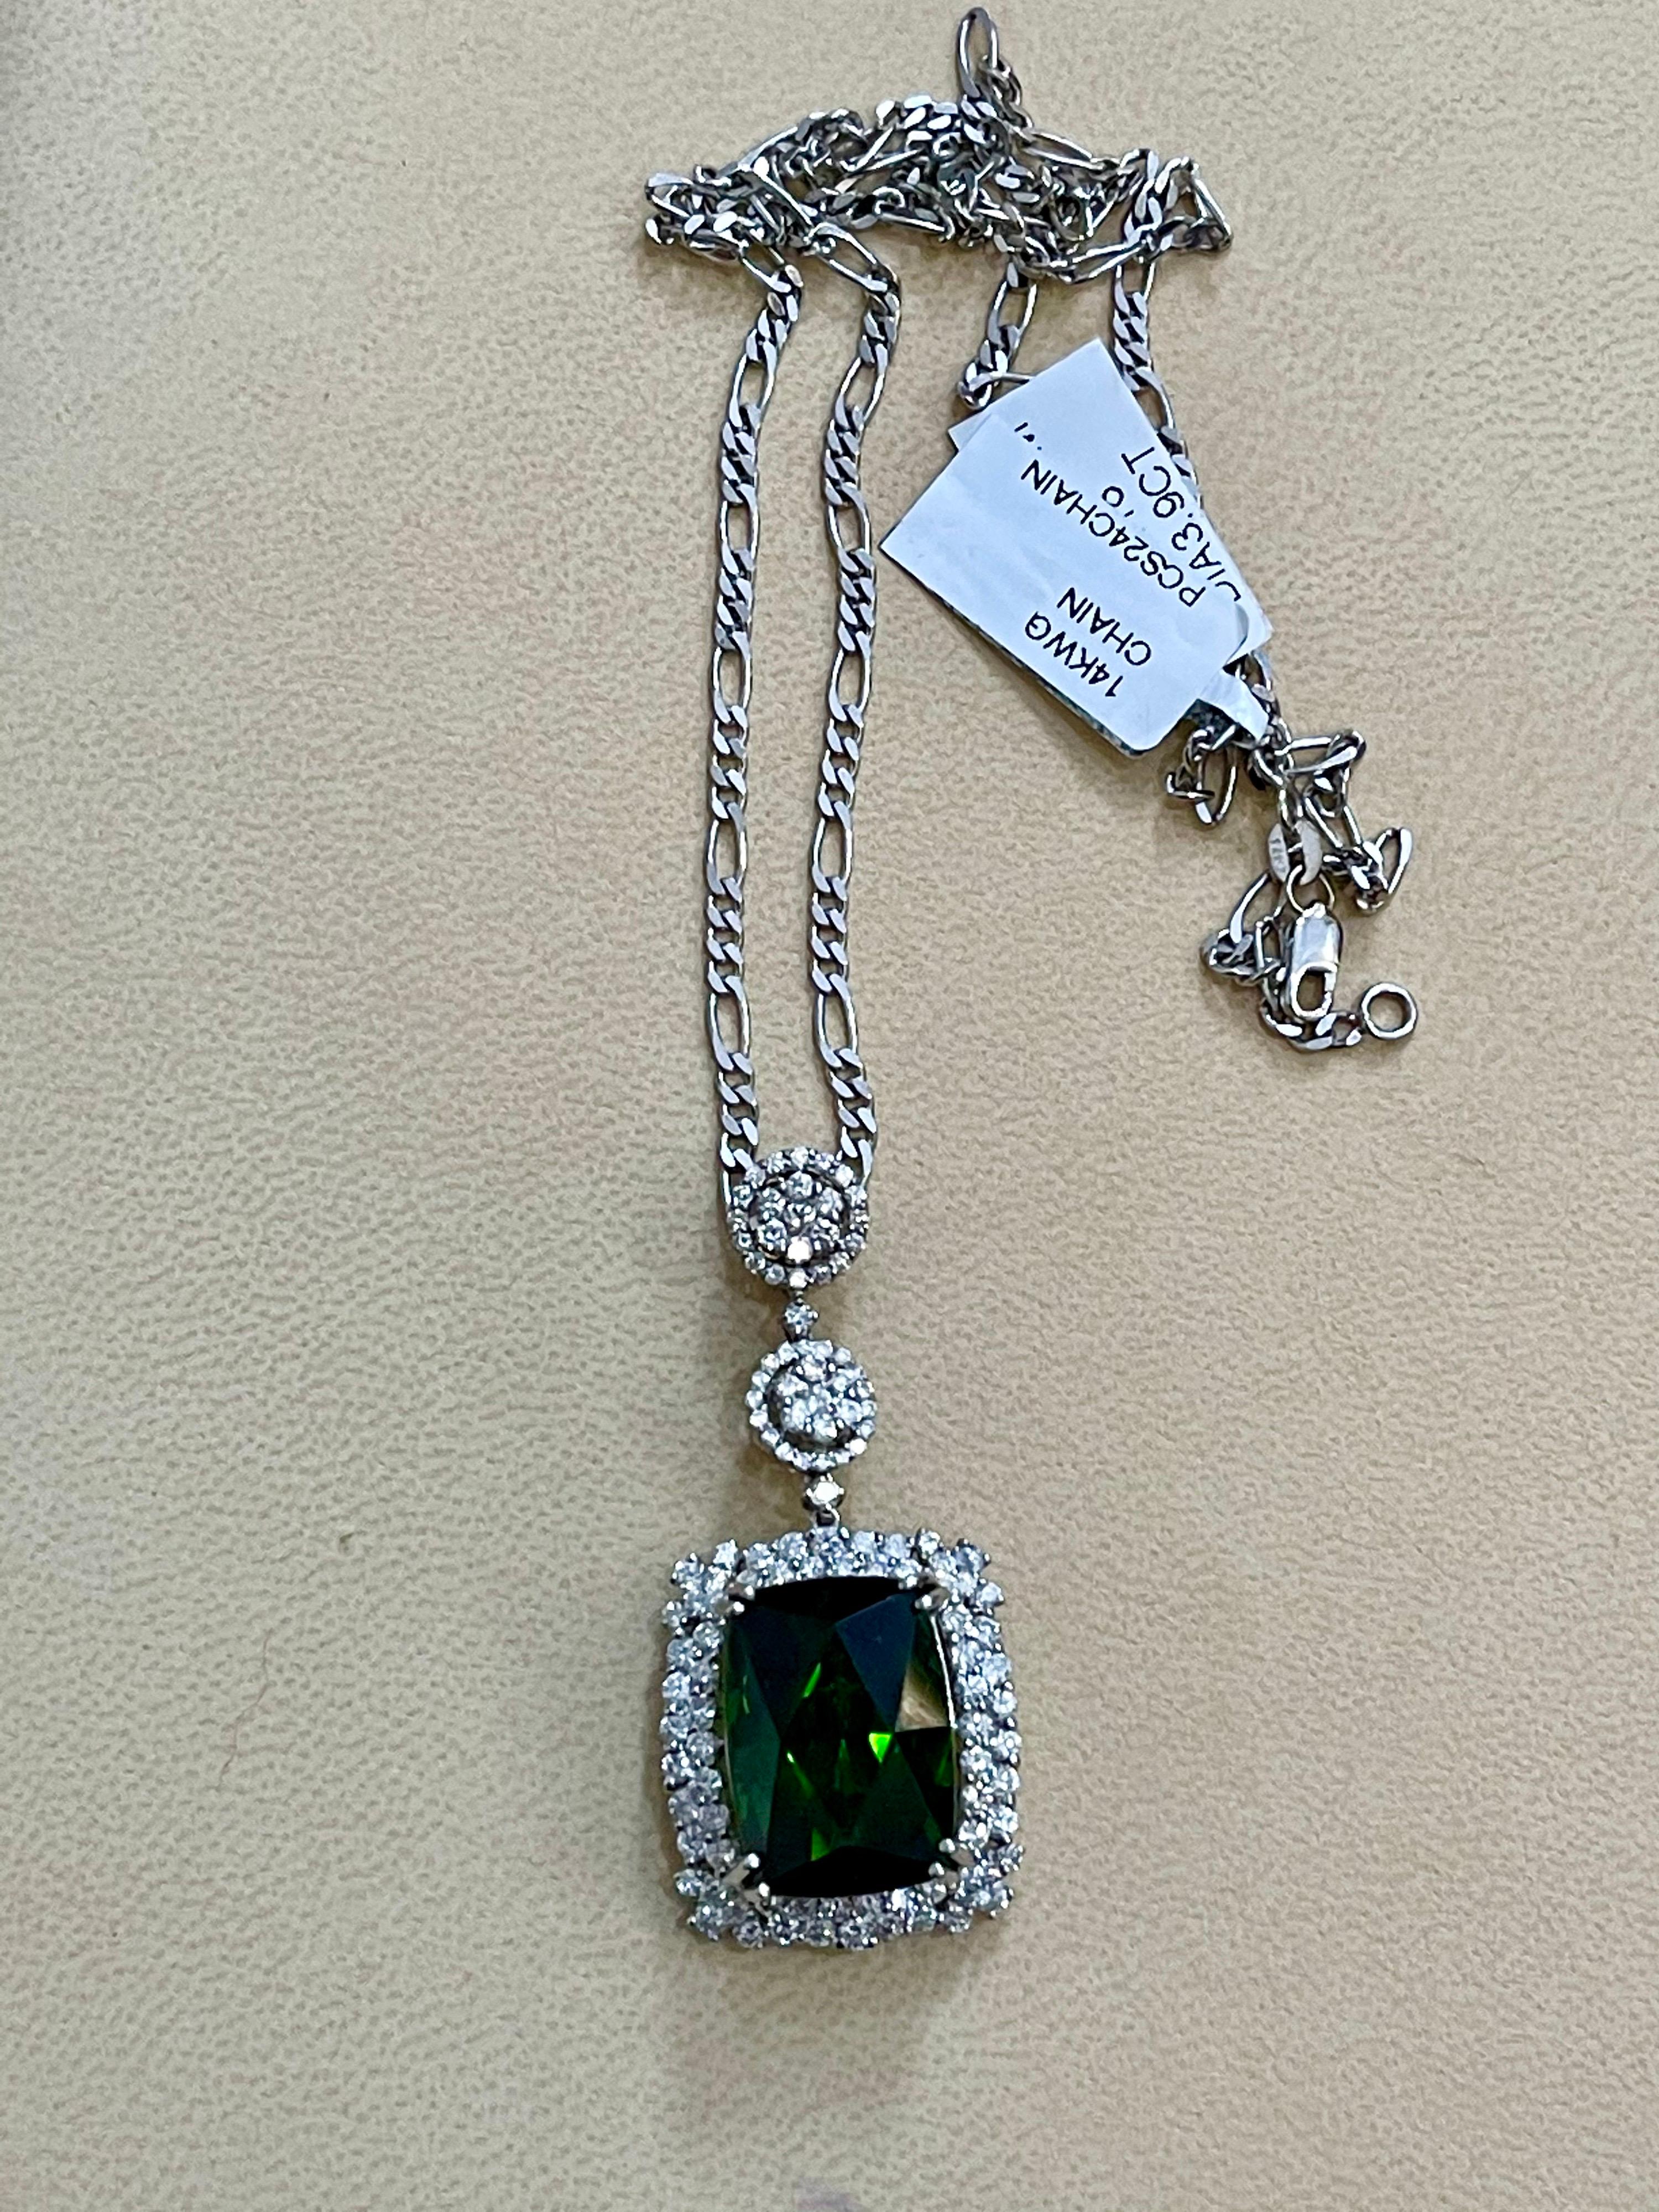 17 Carat Green Tourmaline and 4 Carat Diamond Pendant / Necklace 14 Karat Gold For Sale 5